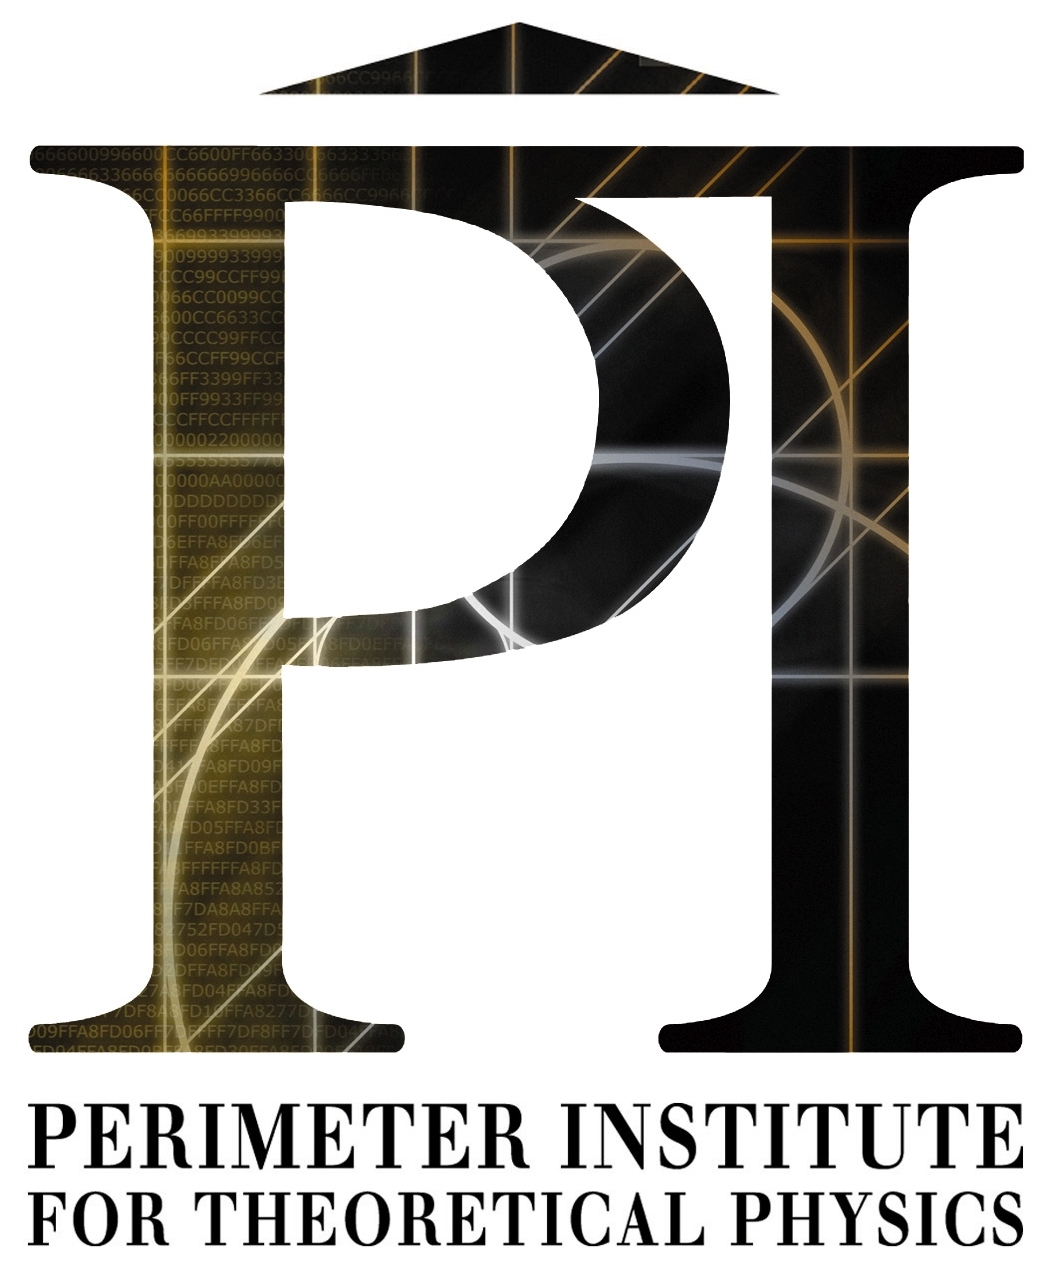 PI logo